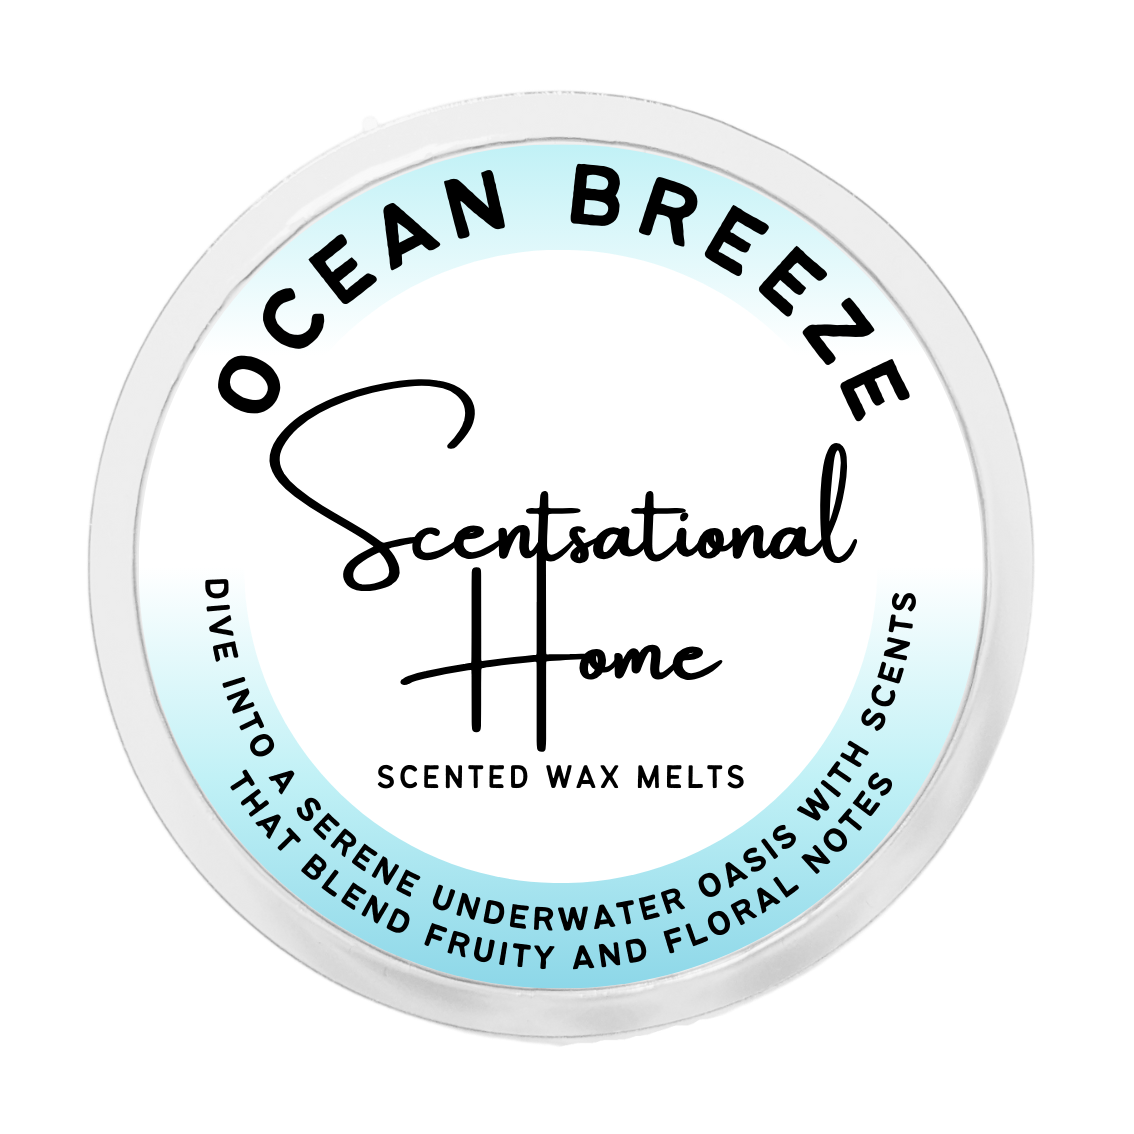 Ocean Breeze Wax Melt